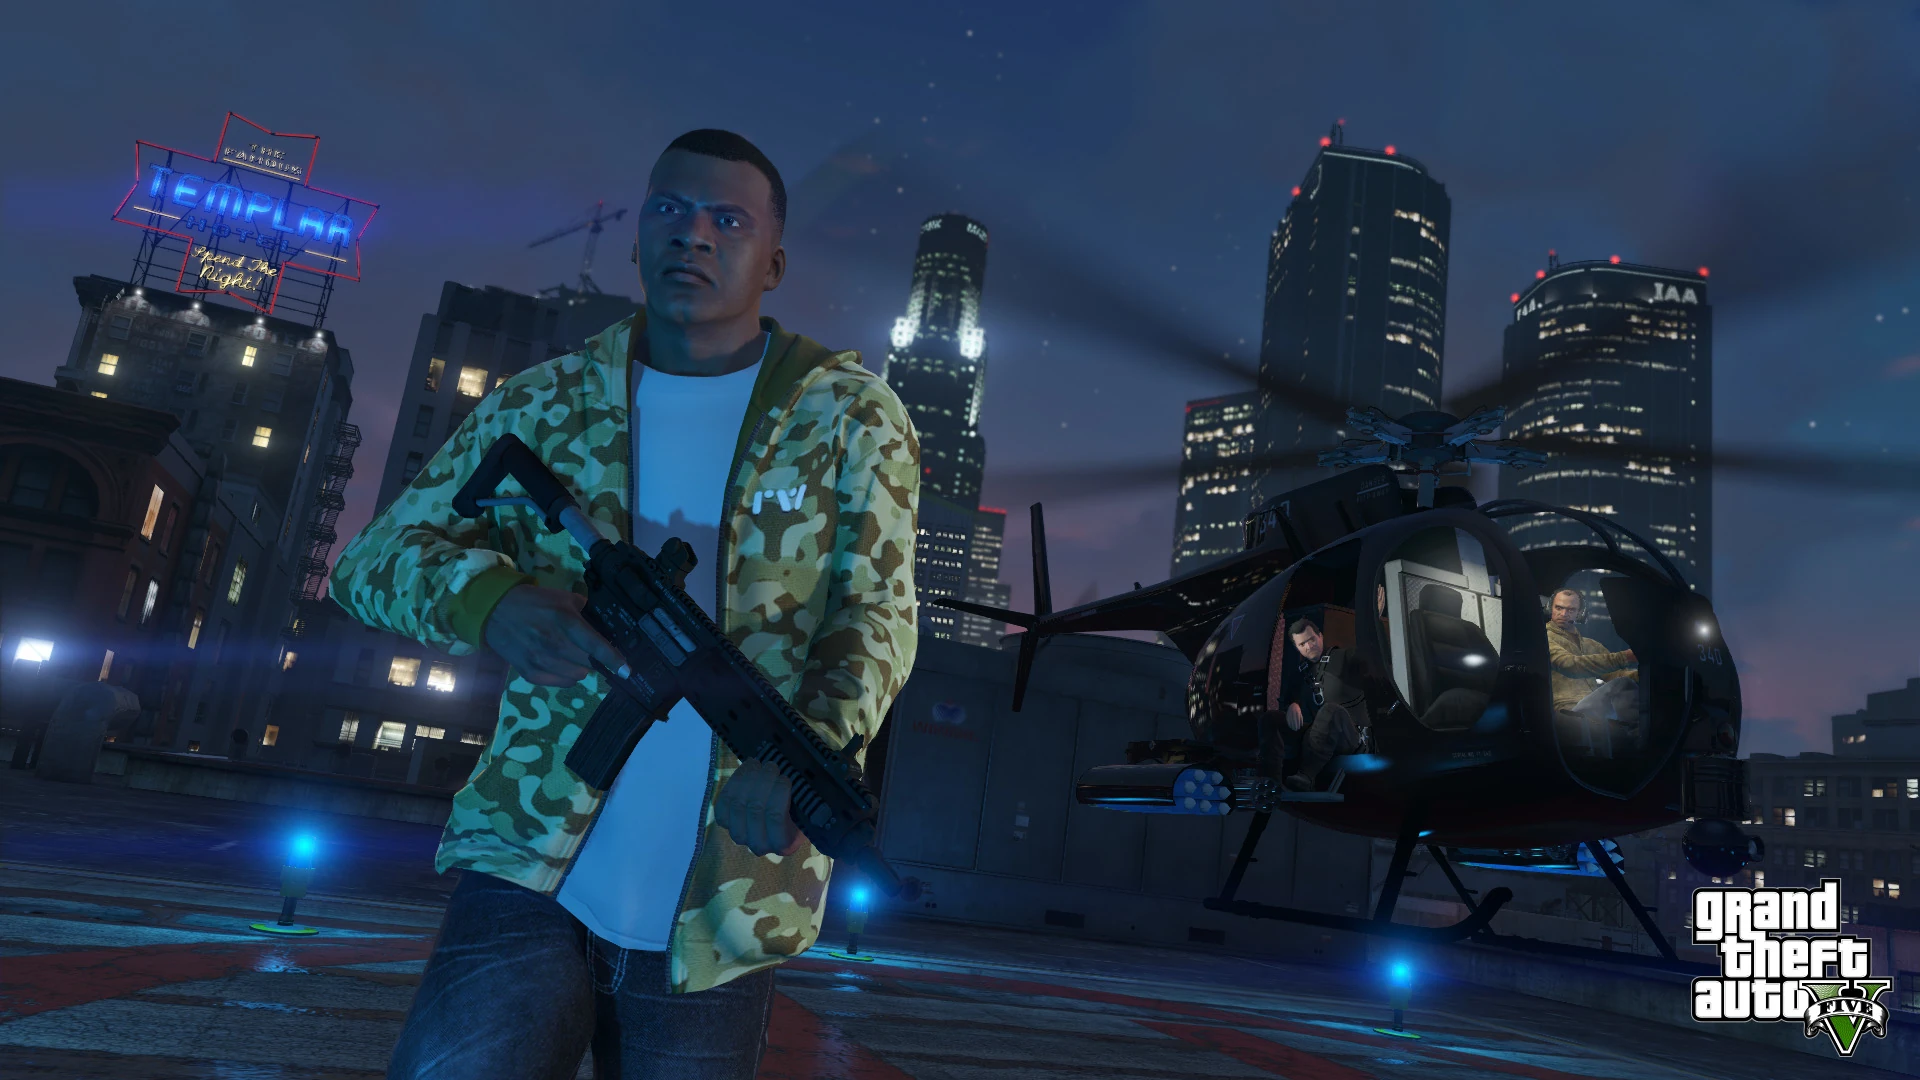 Grand Theft Auto V - PS4 Screenshot 01 - Franklin